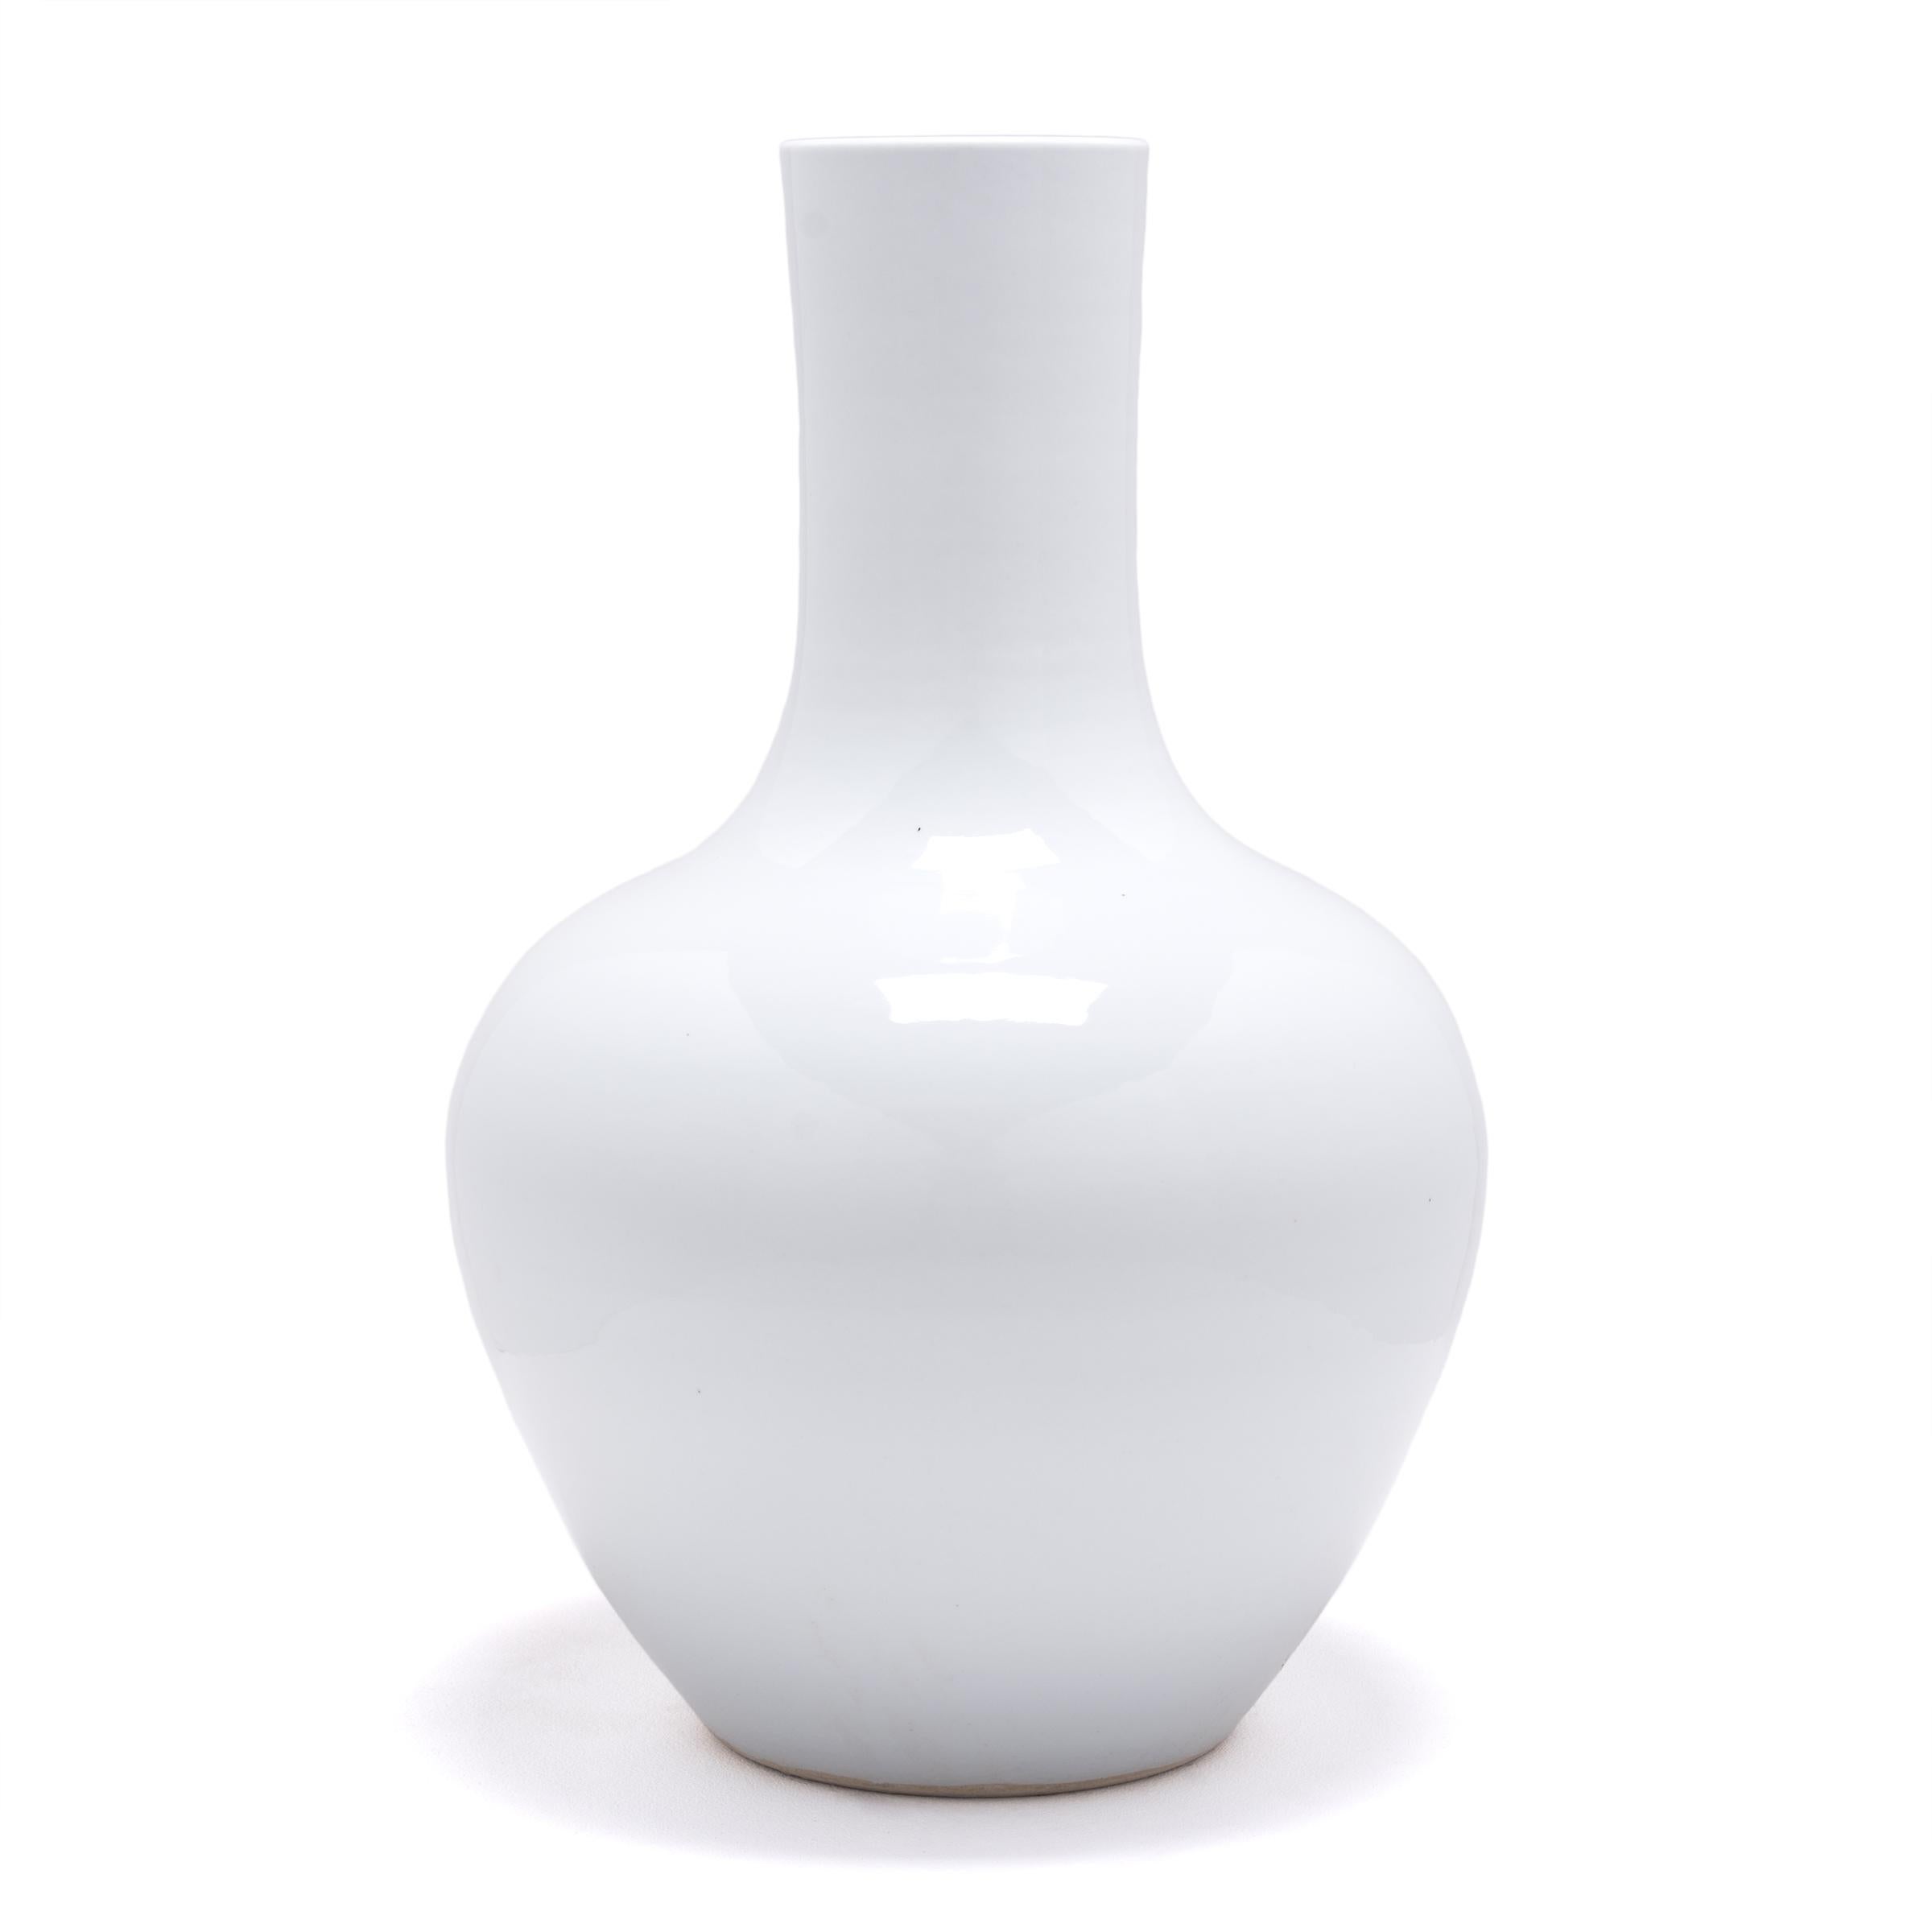 S'inspirant d'une longue tradition chinoise de céramiques monochromes, ce grand vase à col de cygne est recouvert d'une glaçure blanche froide. Le vase présente un corps arrondi avec des épaules hautes et un col cylindrique étroit, une forme